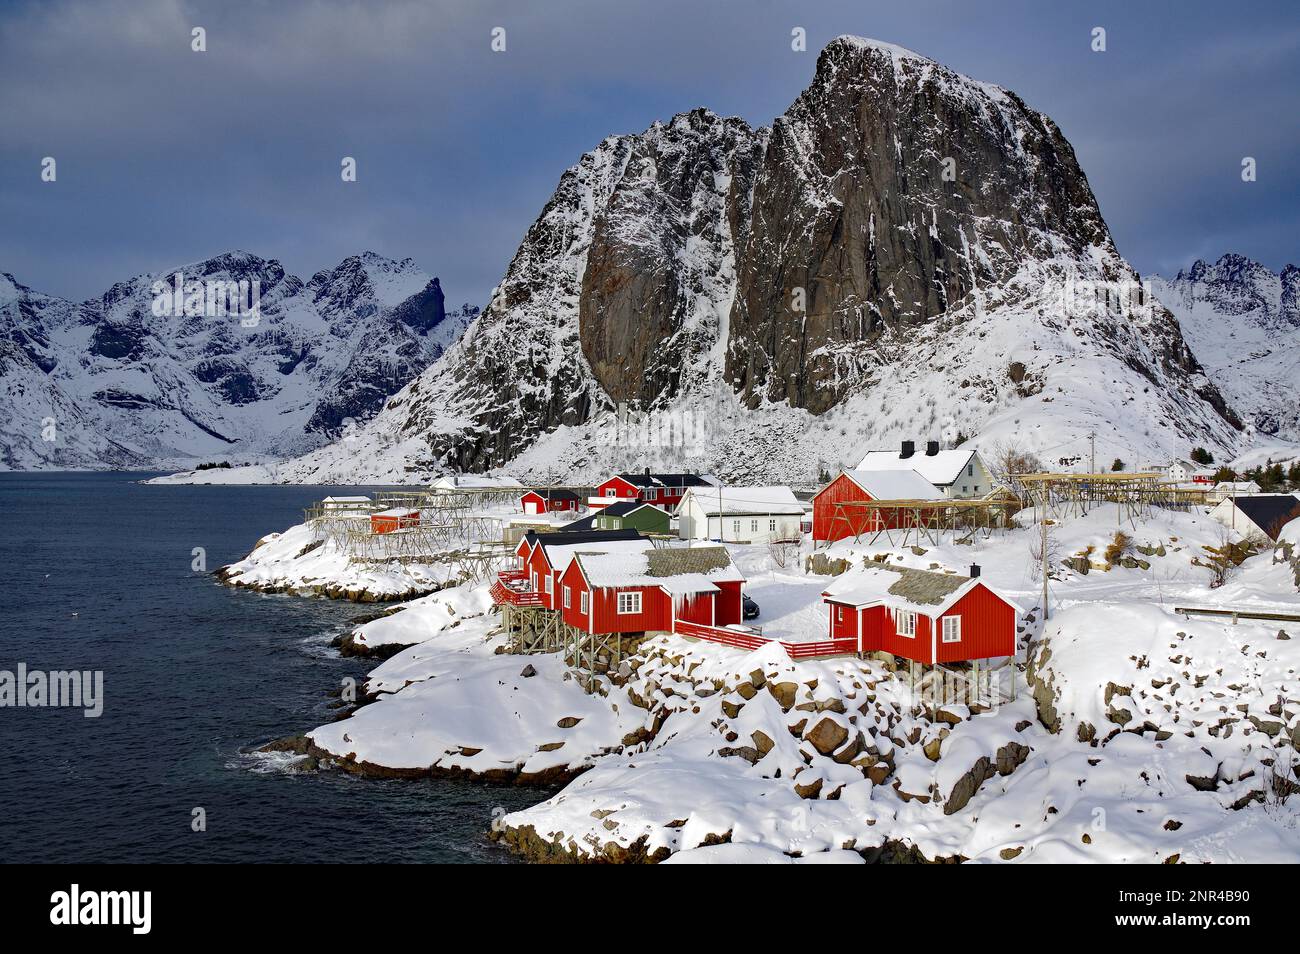 Case di legno rosso e aspre, montagne selvagge da un fiordo, inverno, vacanze, turismo, idil invernale, Hamnöy, Reinefjorden, Lofoten, Norvegia, Europa Foto Stock